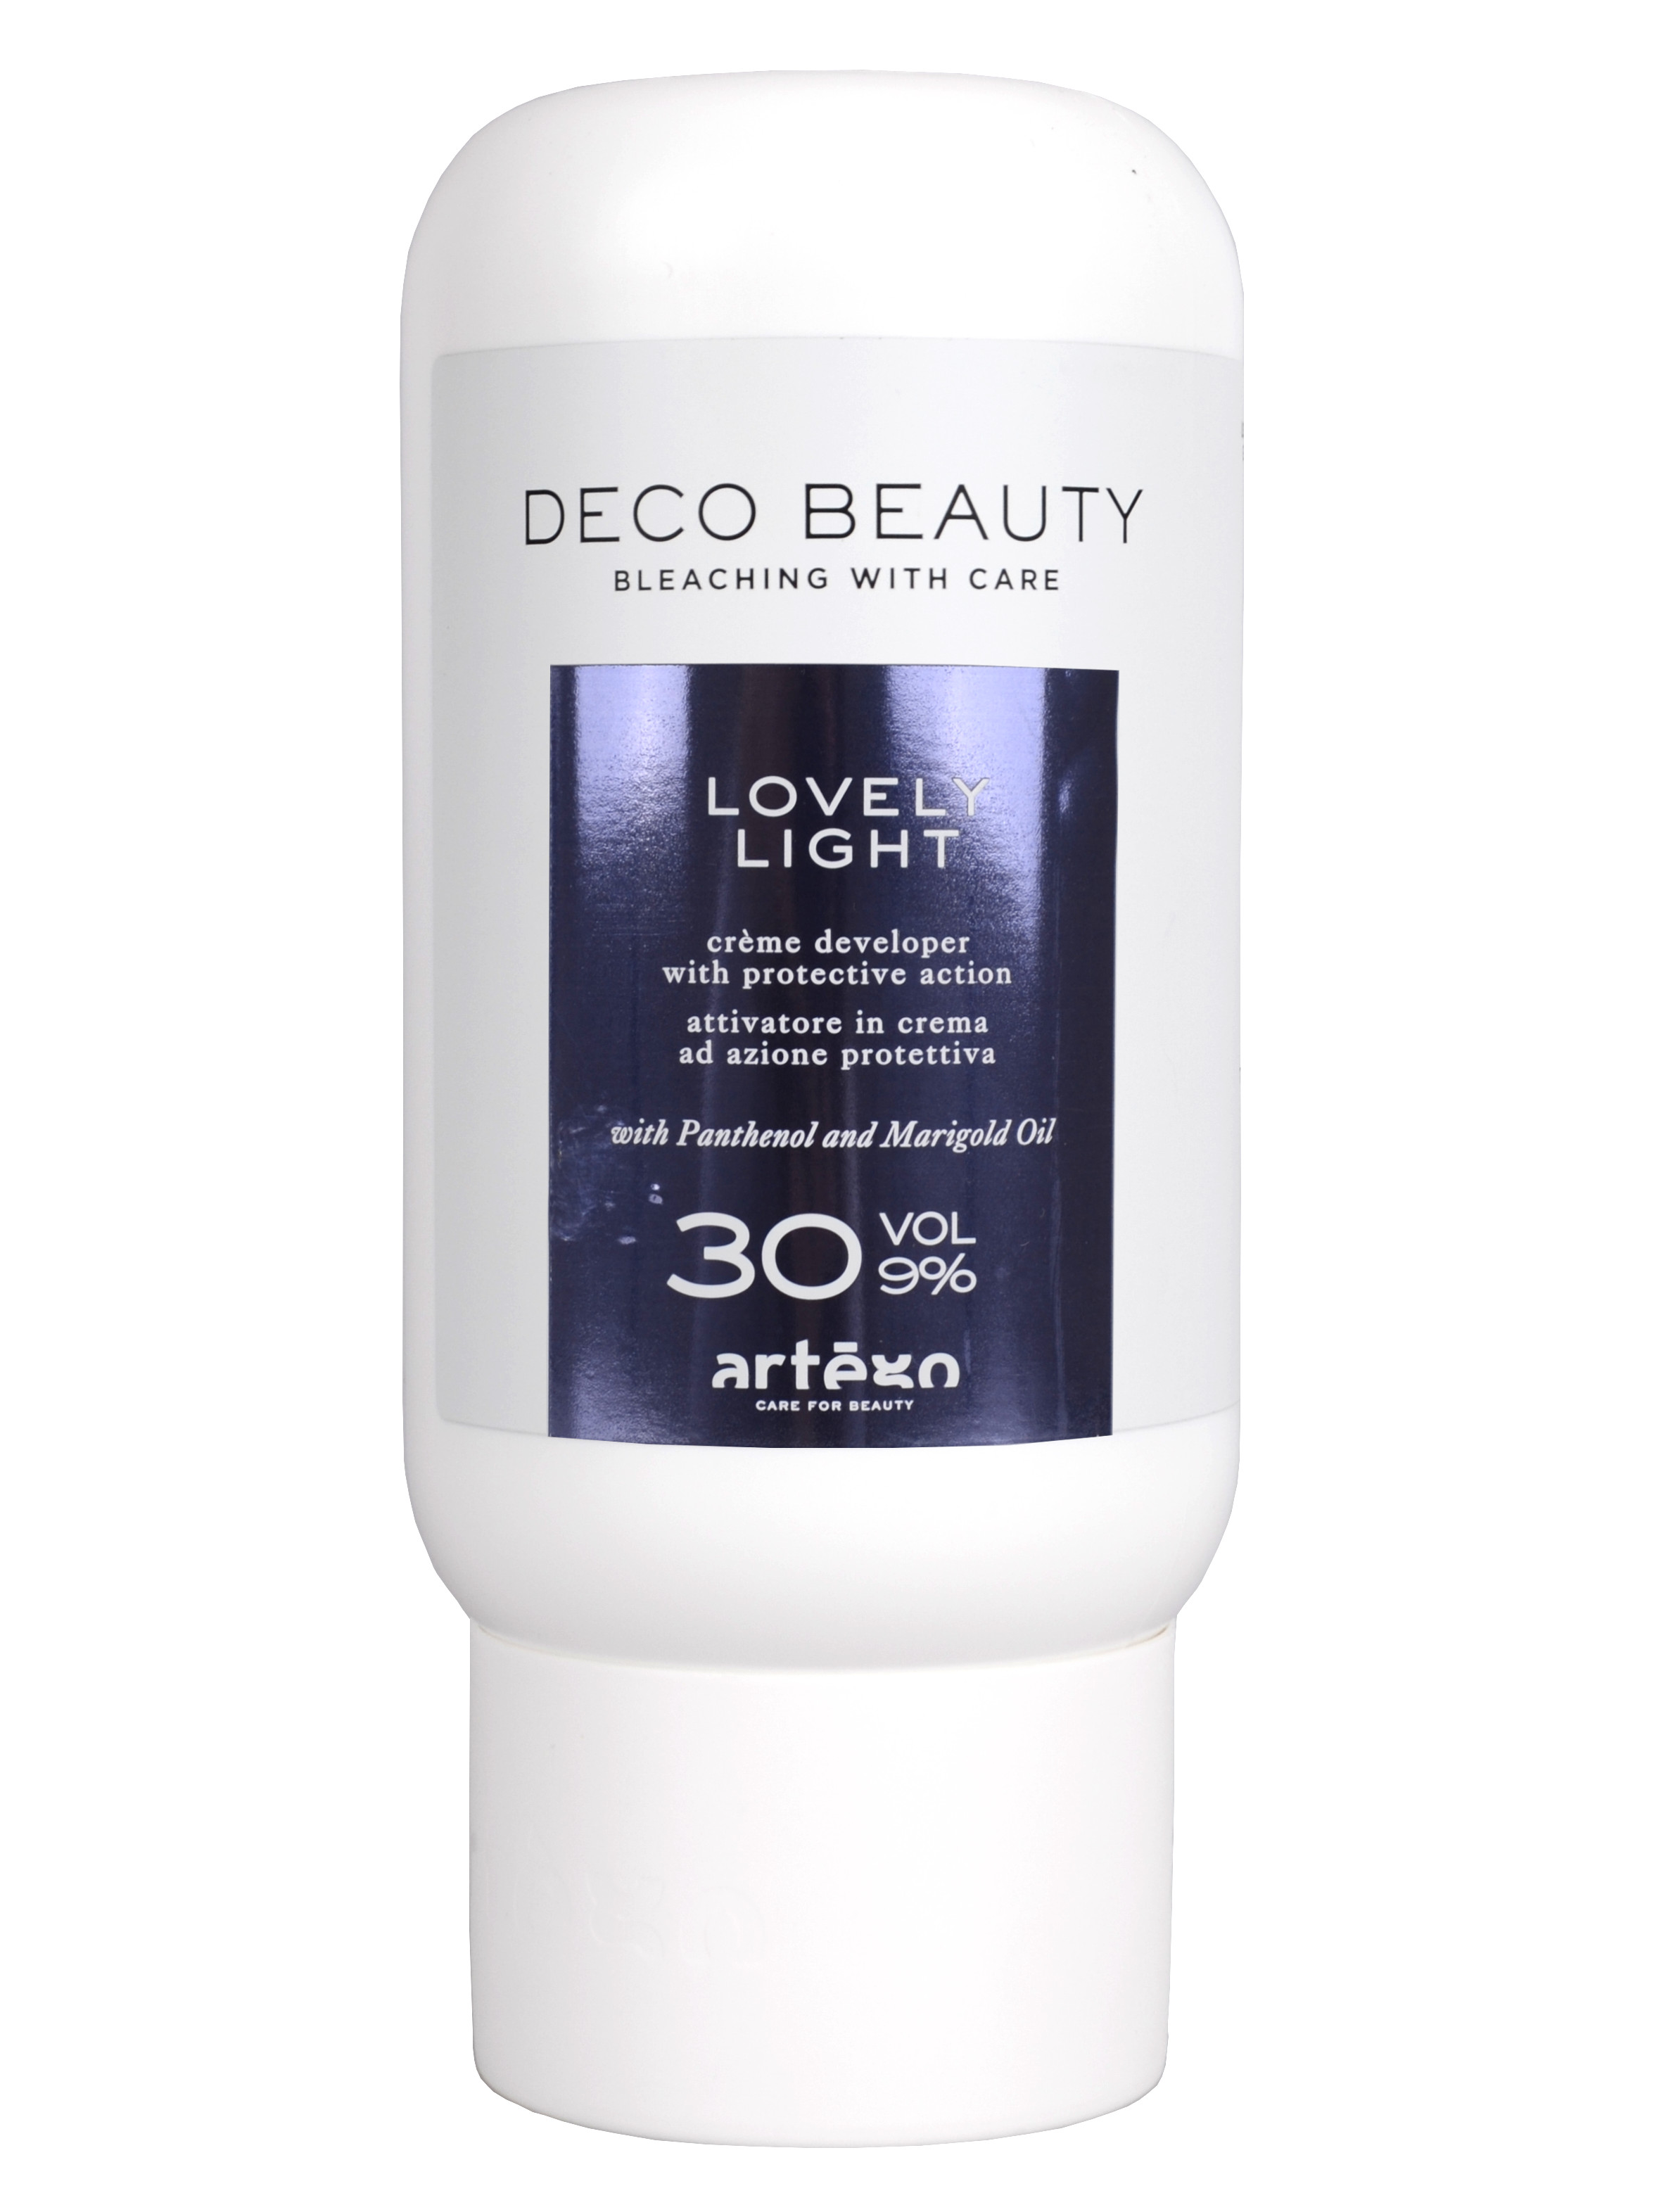 Oxidační krém Artégo Deco Beauty Lovely Light 30 VOL 9% - 1000 ml (0164079) + dárek zdarma